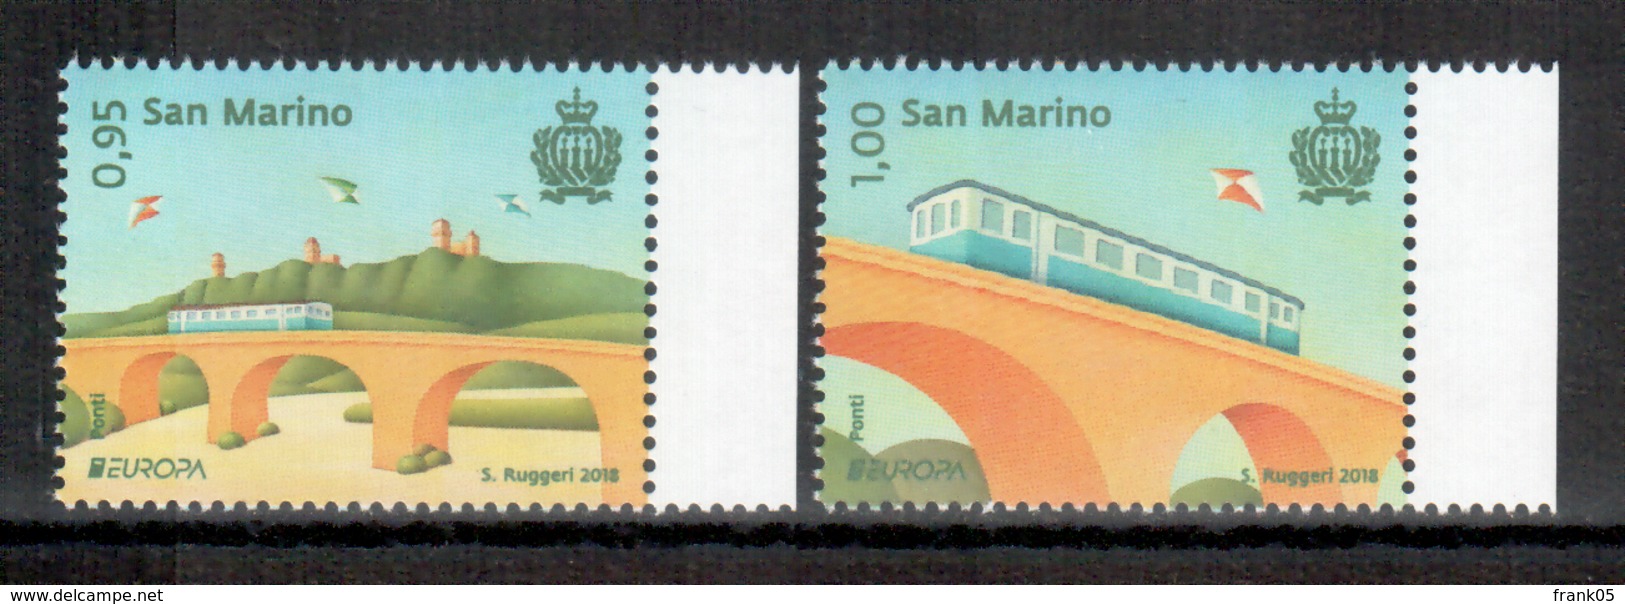 San Marino / Saint Marin 2018 Satz/set EUROPA ** - 2018